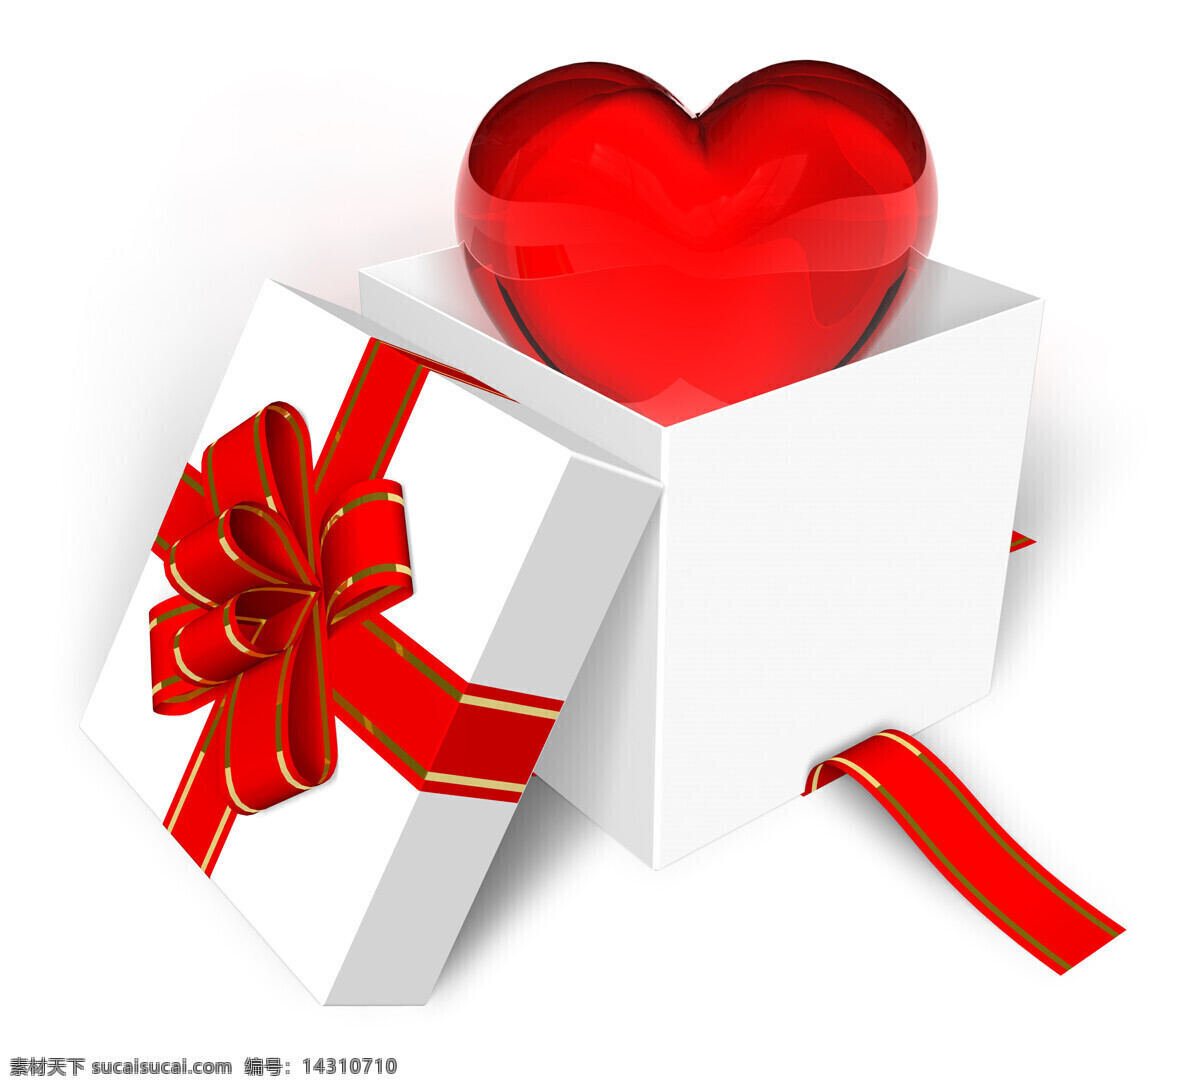 打开 心形 礼盒 心型 爱心 饱满的心 高清图片 爱情 红色 红心 情人节 结婚 节日庆典 生活百科